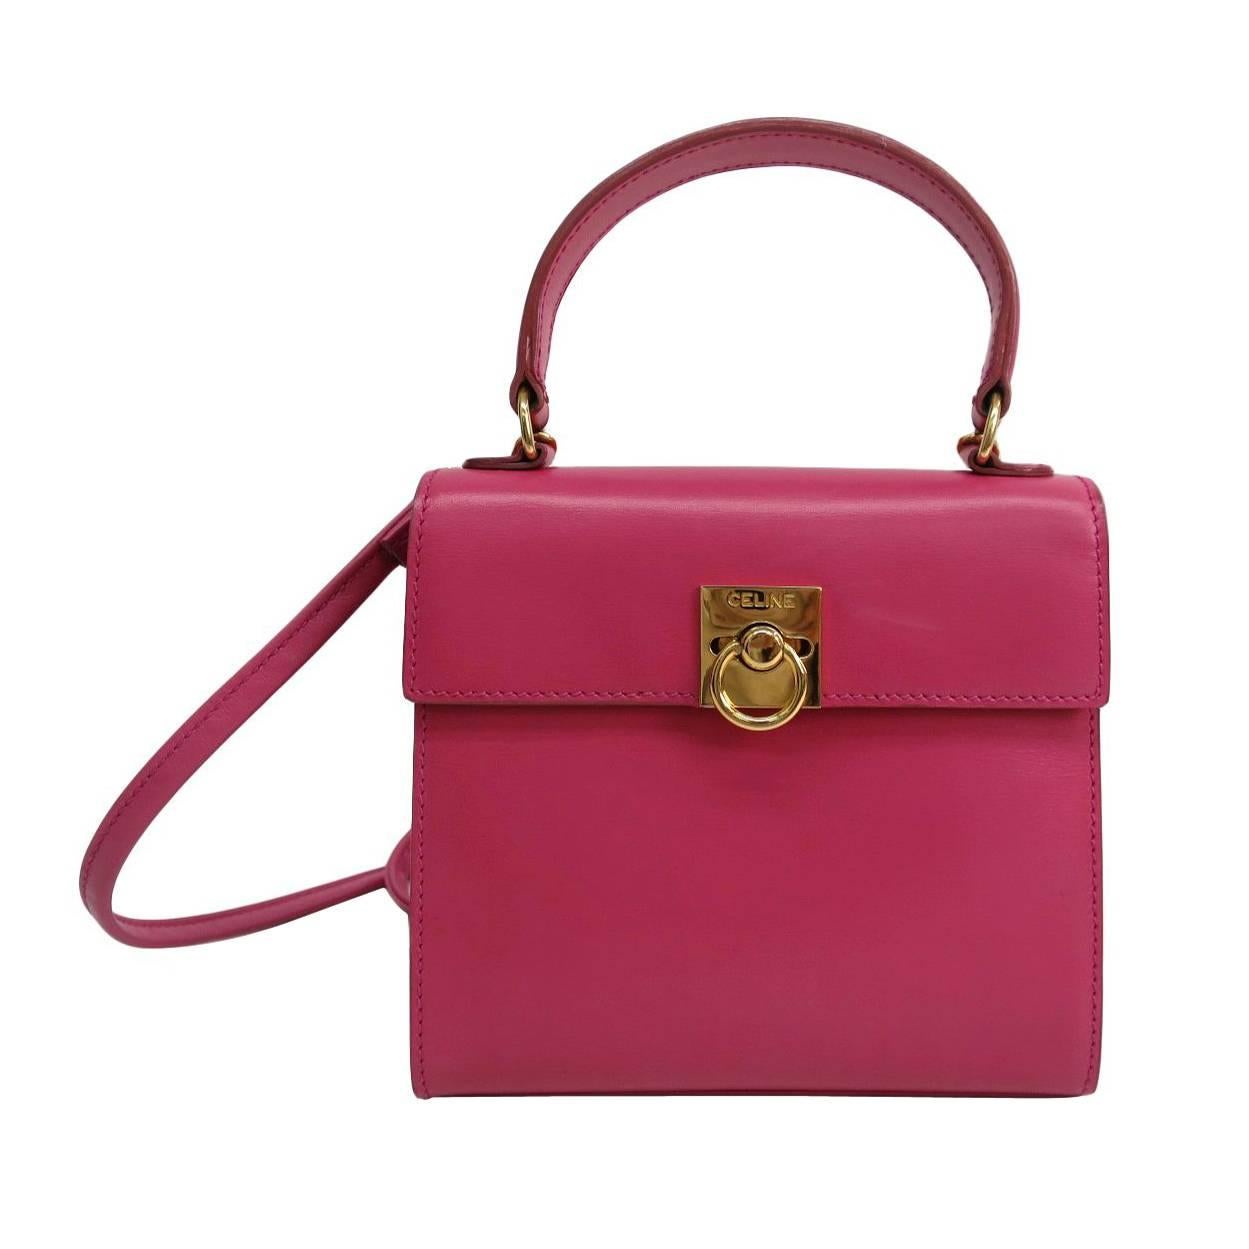 Celine Pink Leather Box Kelly Top Handle Satchel Shoulder Bag